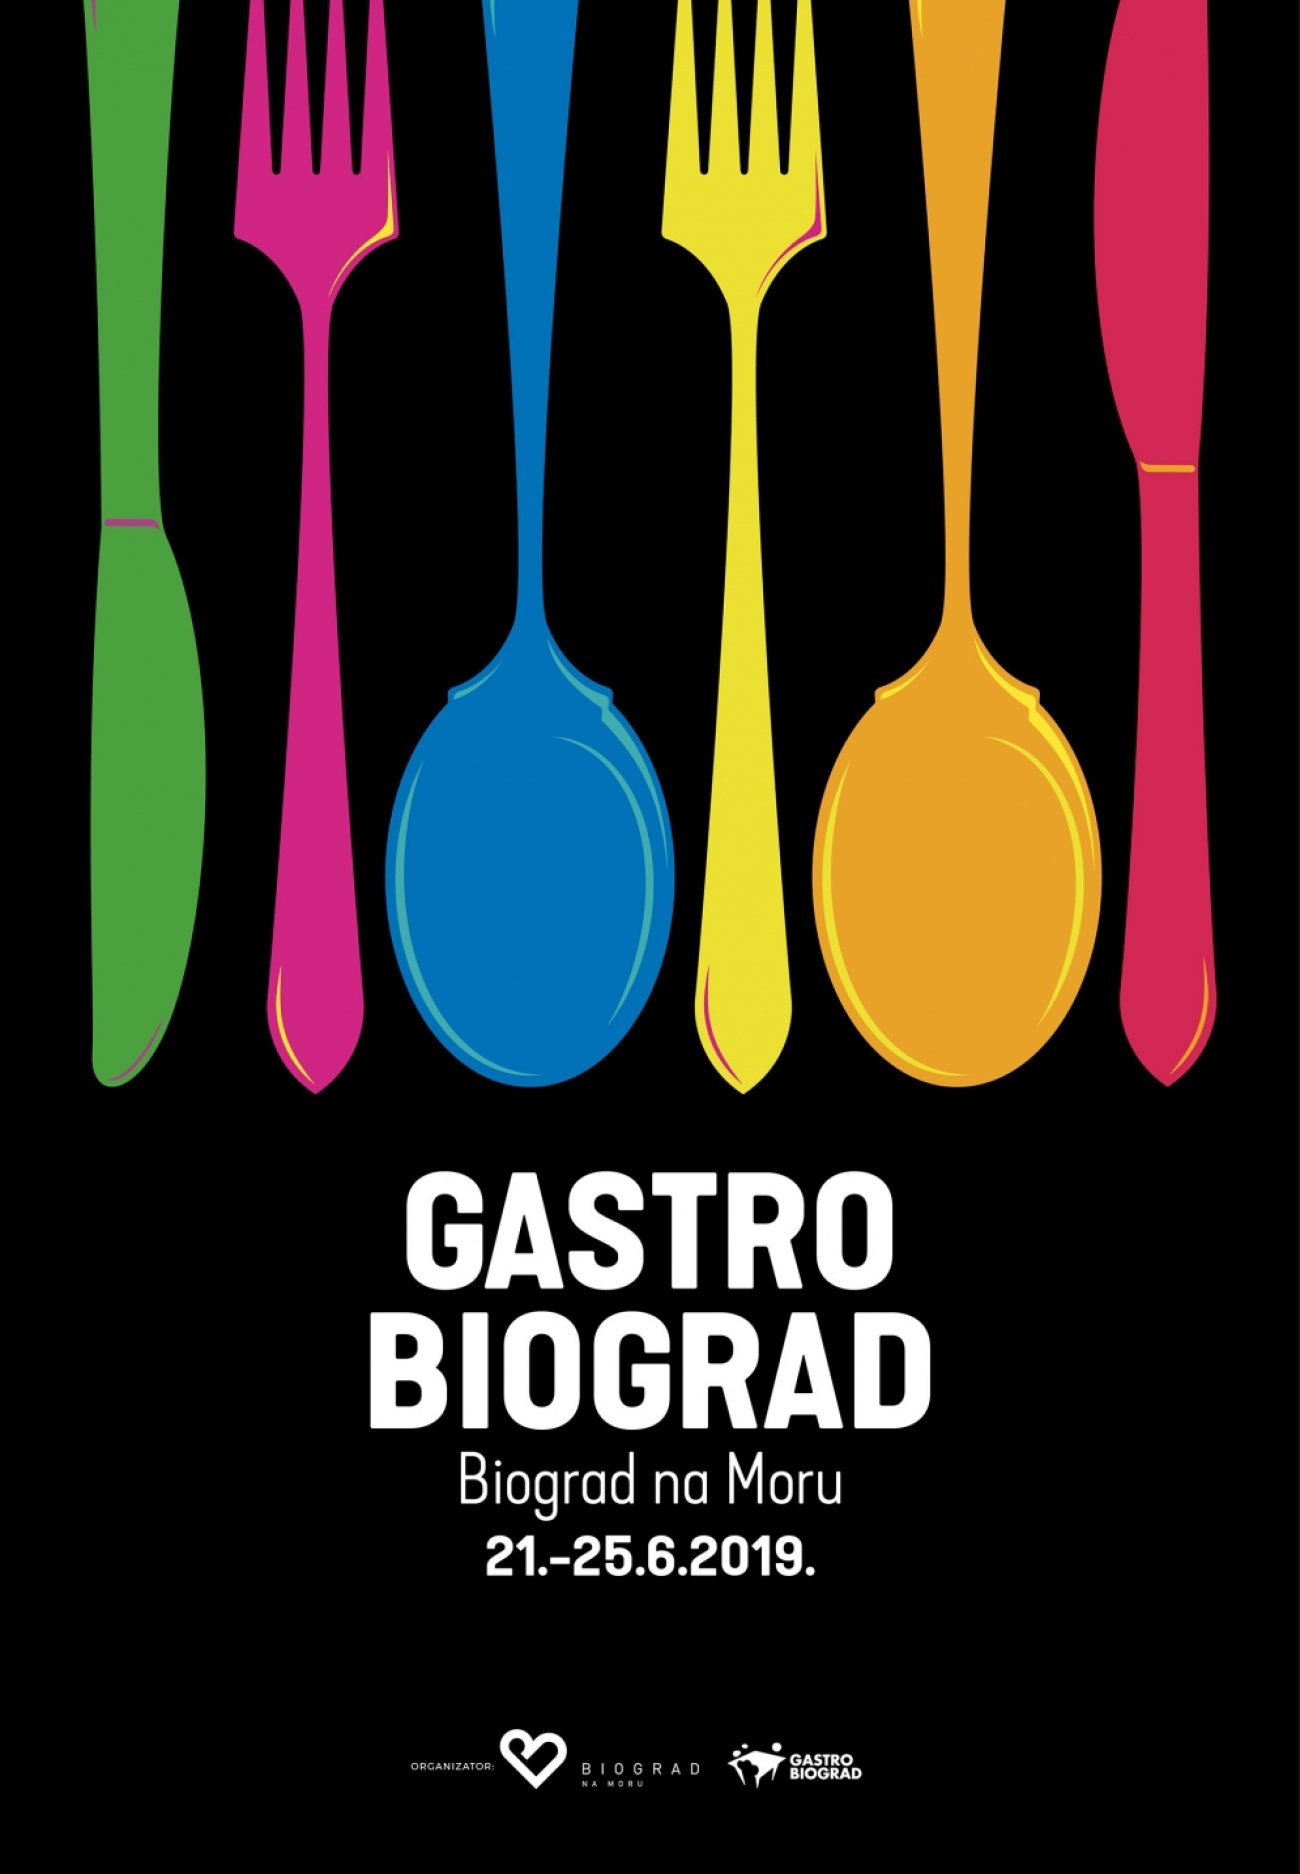 Gastro Biograd od 21. do 25. lipnja 2019. godine u Biogradu na Moru na rivi